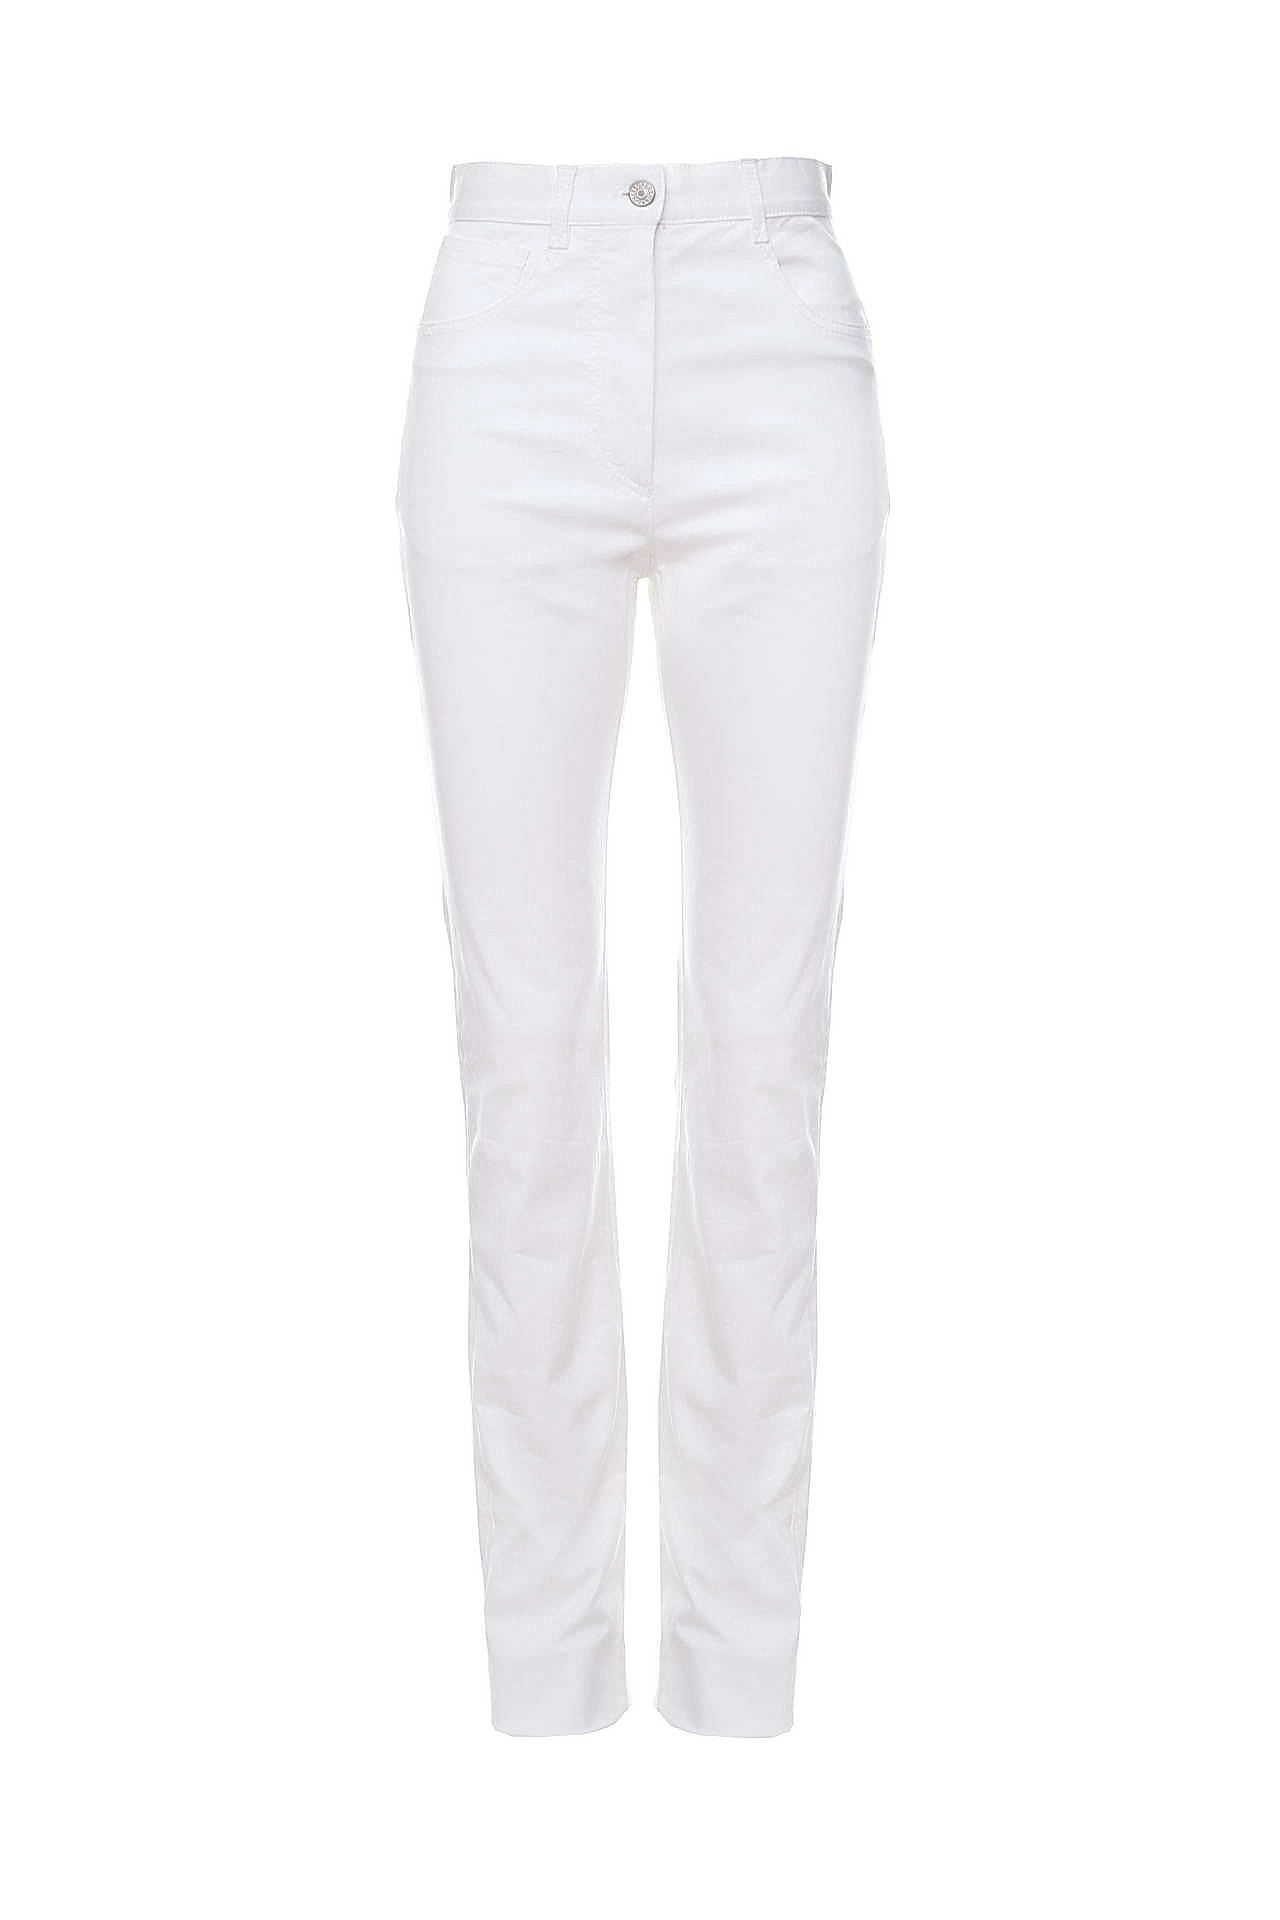 Белые джинсы женские прямые